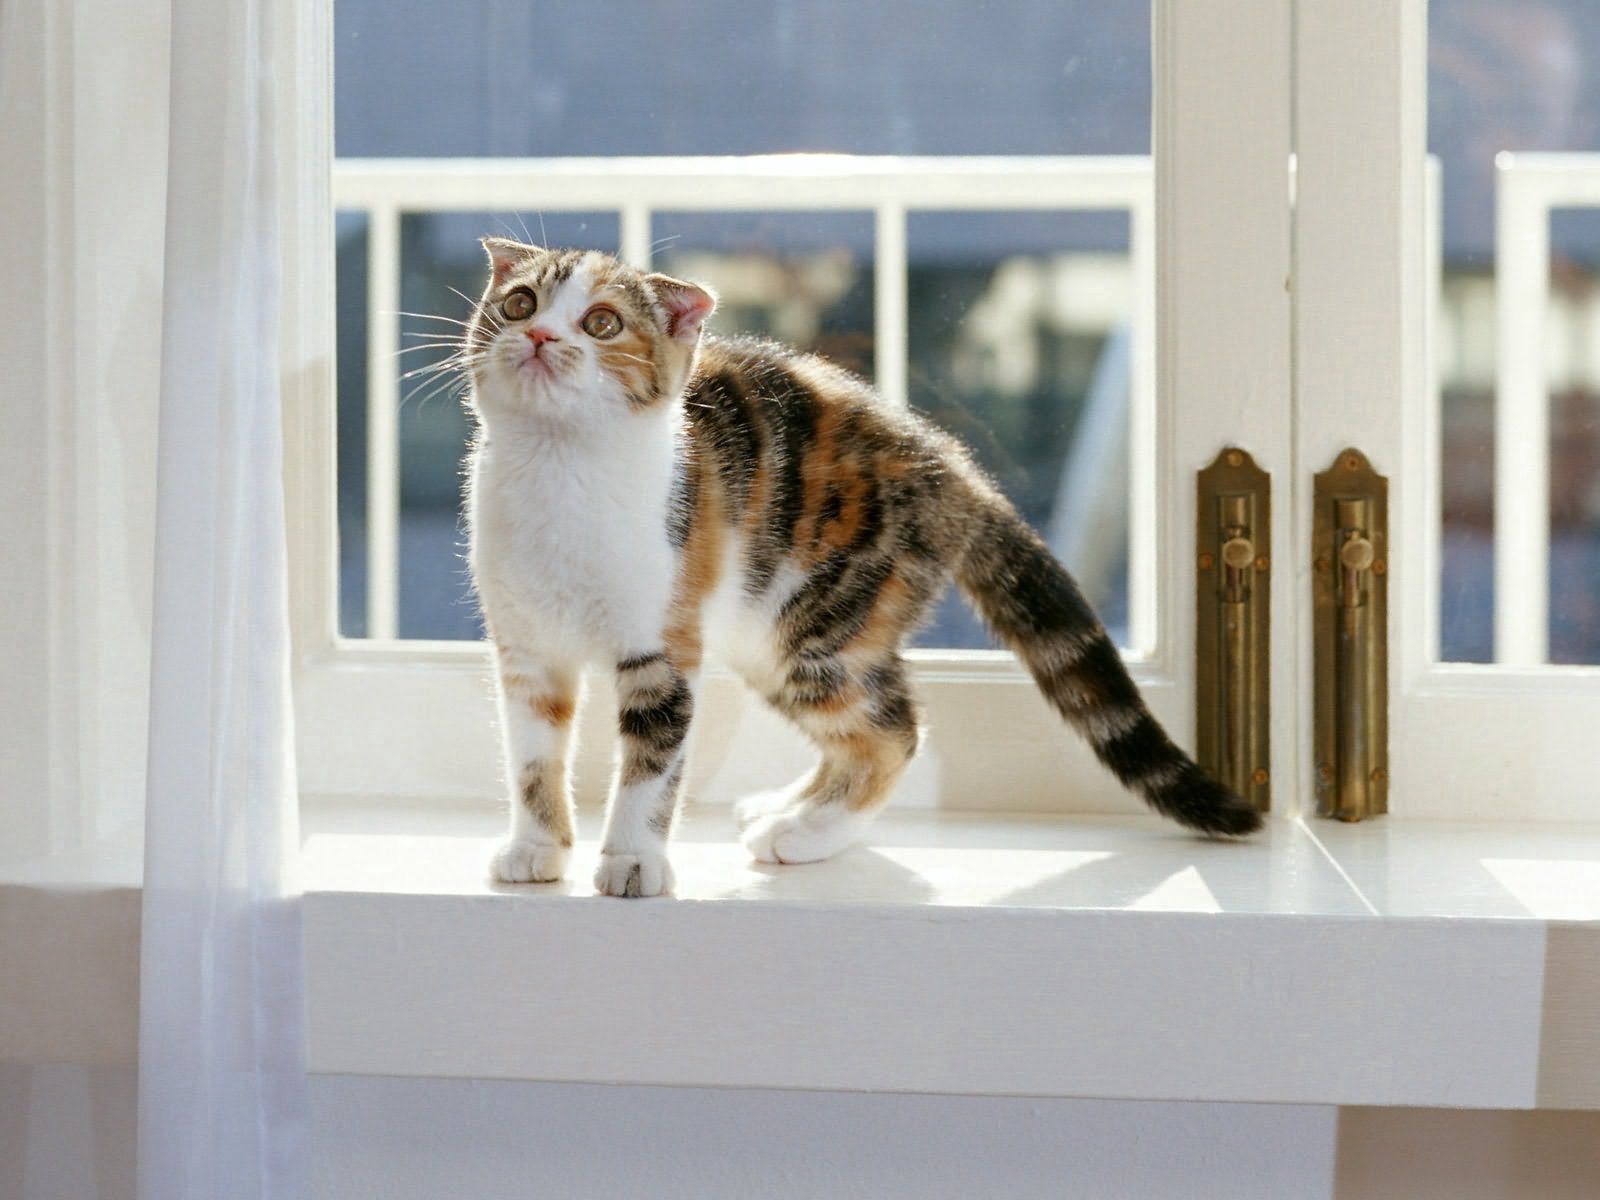 kitty, kitten, animals, sit, window sill, windowsill